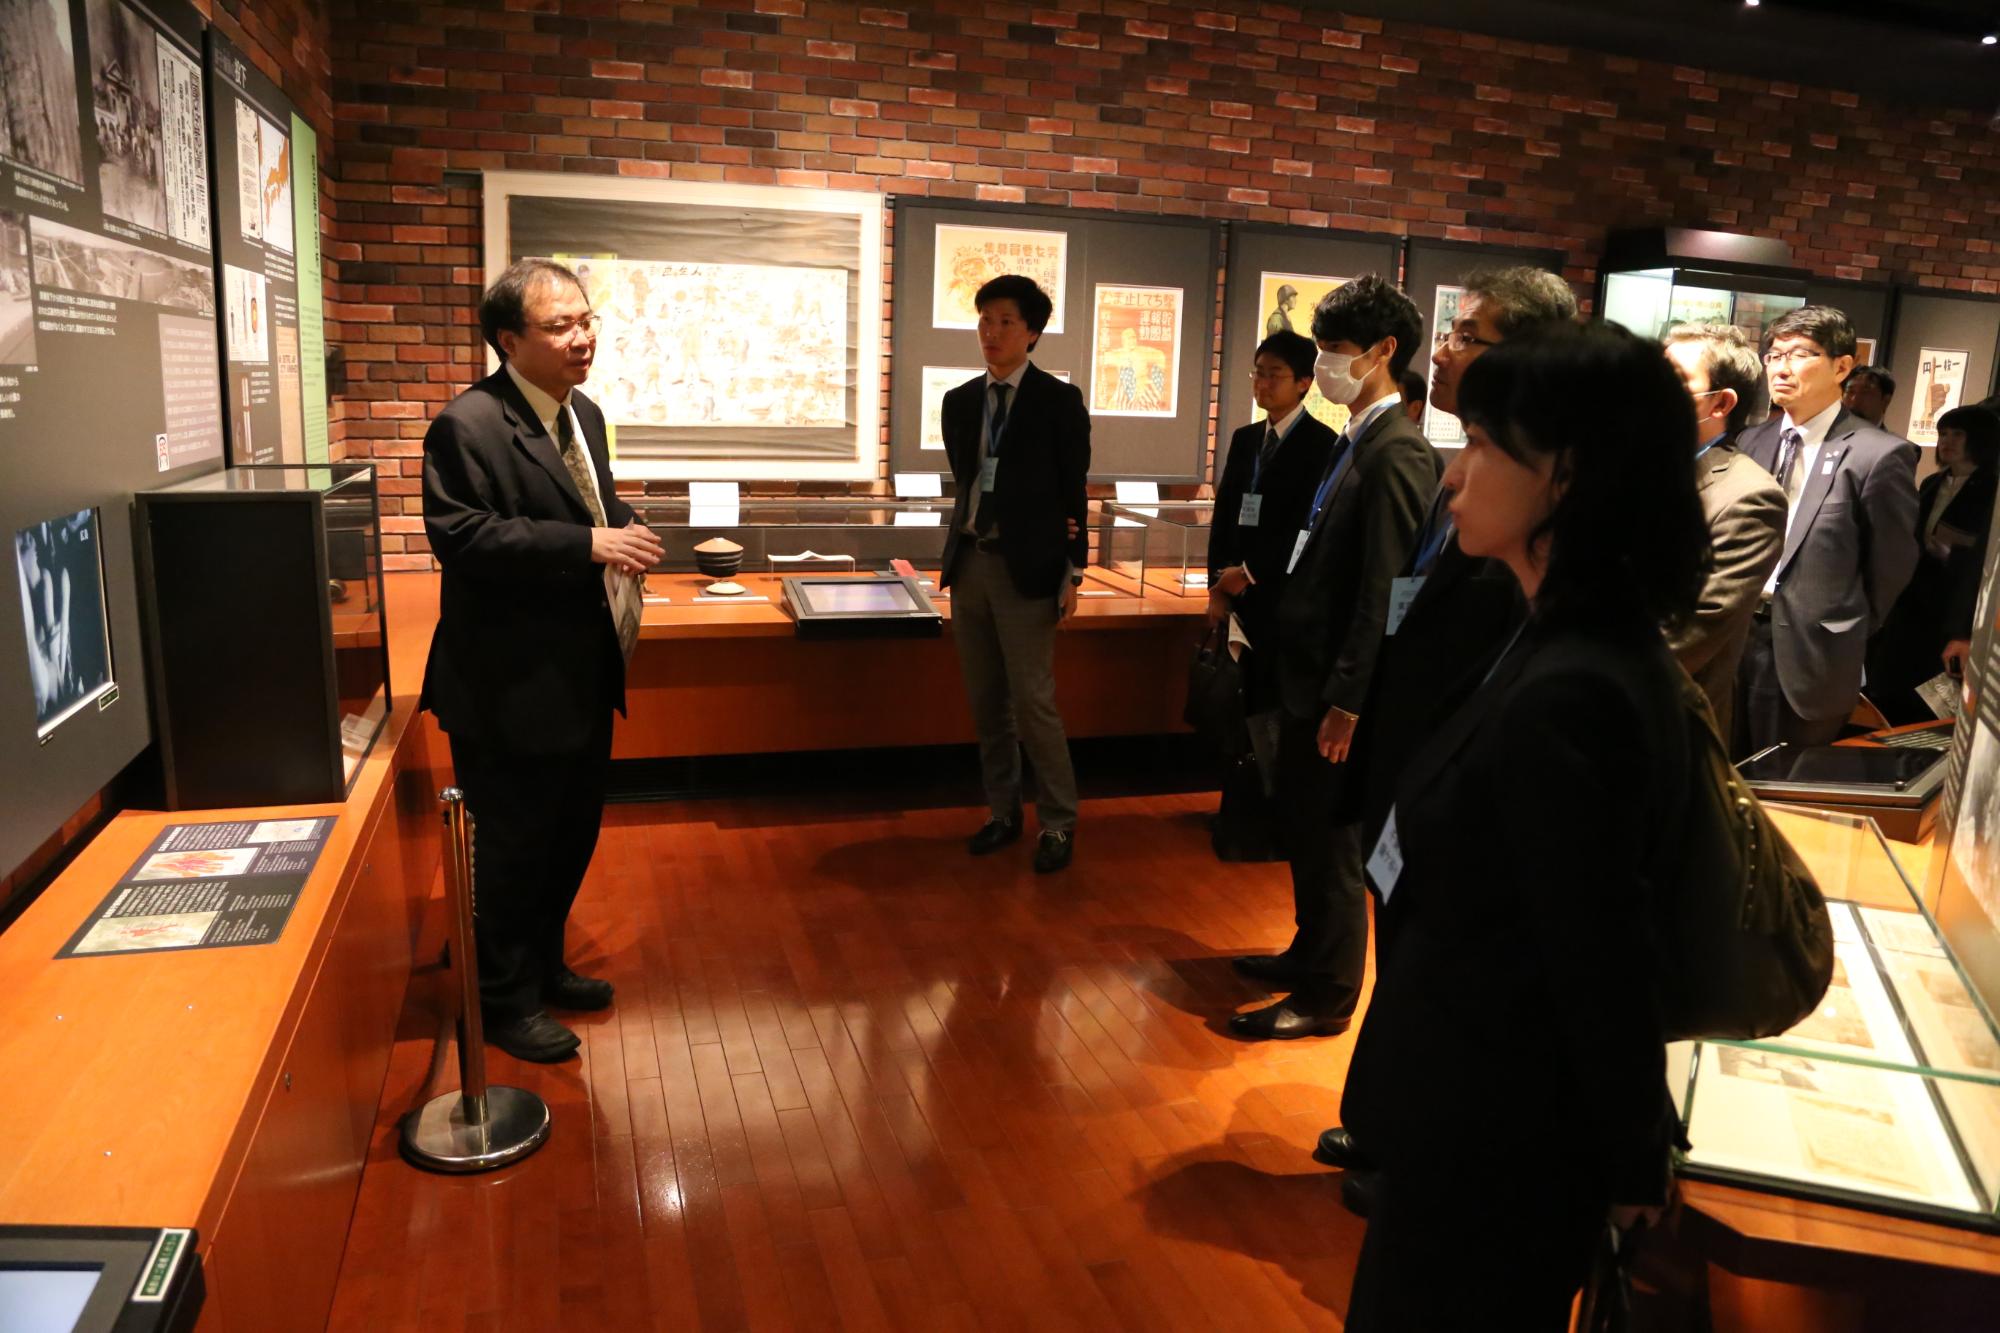 展示品の周りに集まる関係者と、その前に立ち、話をしている男性の写真